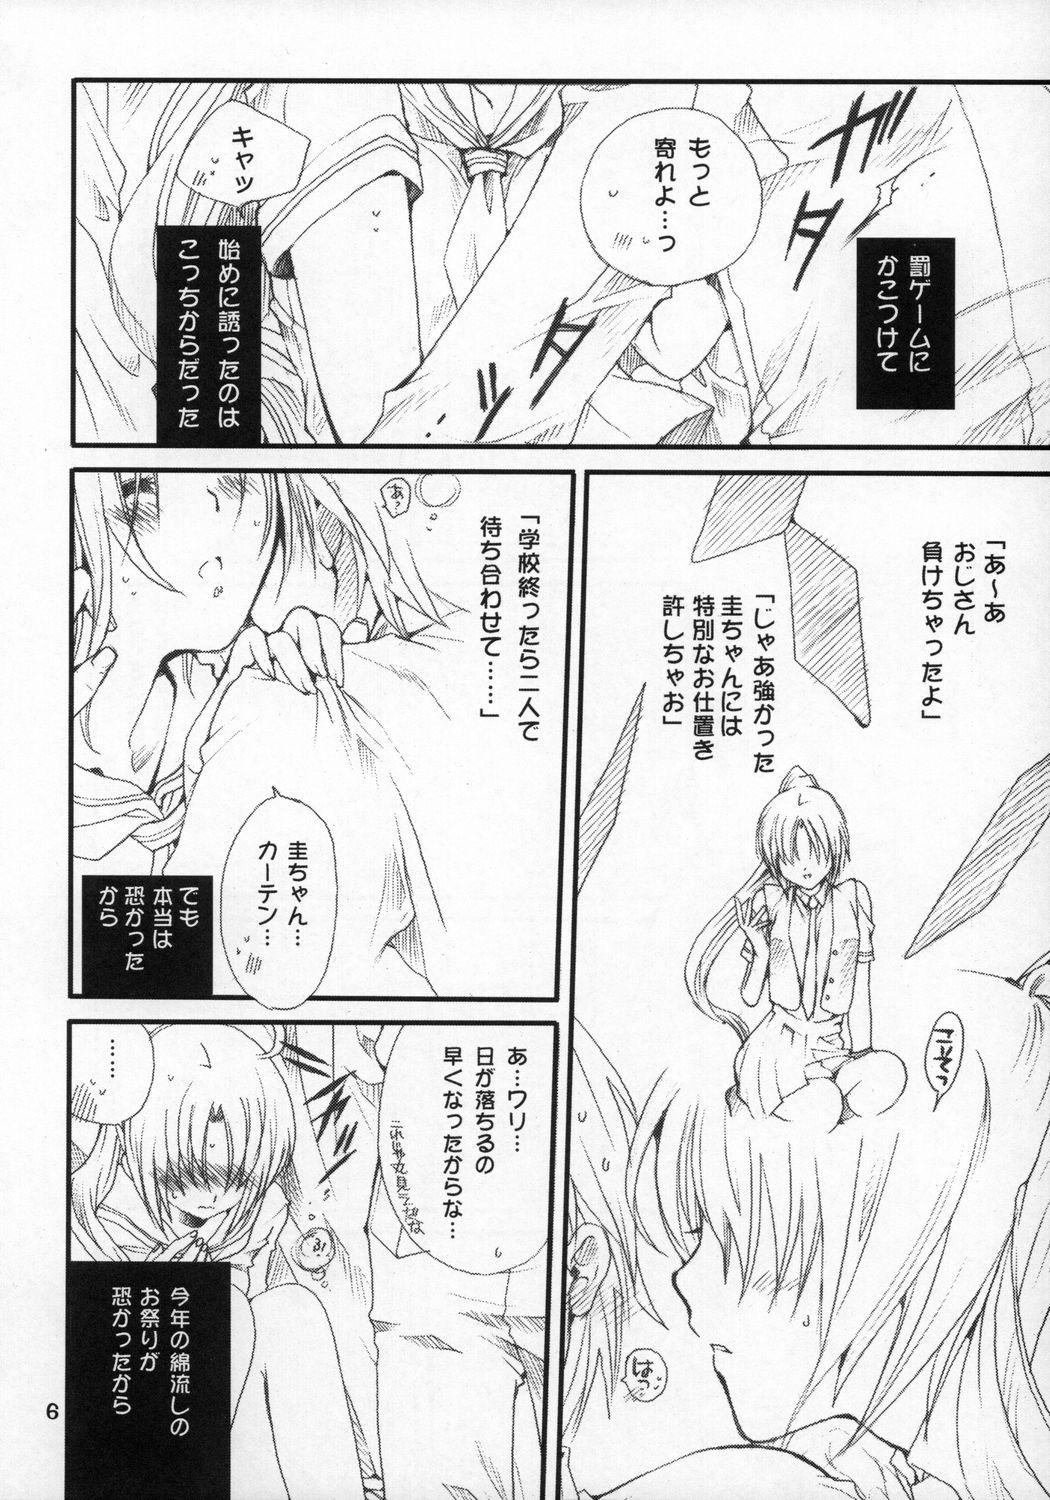 Webcam Mion-san Ganbaru! - Higurashi no naku koro ni Suckingcock - Page 5